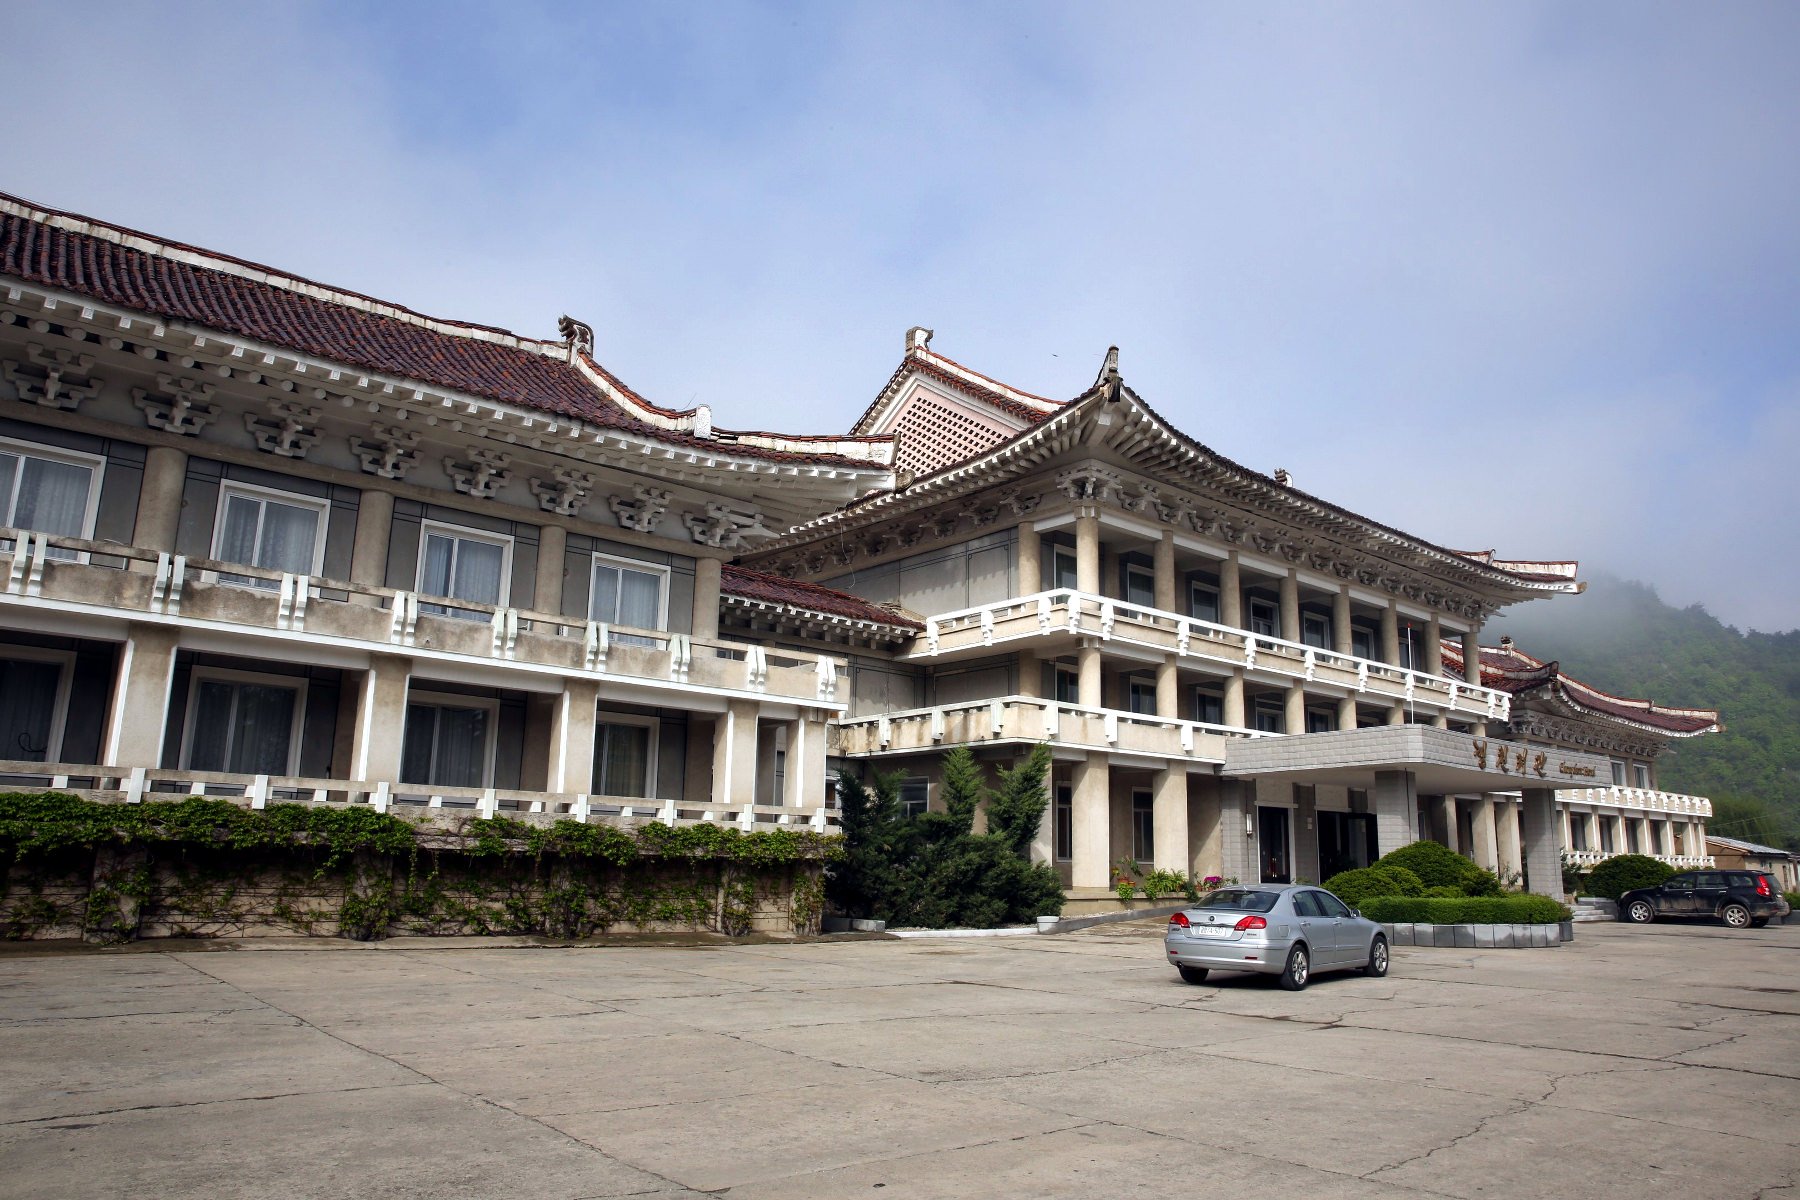 El hotel Chongchon en la ciudad de Hyangsan, Monte Myohyang, Corea del Norte (RPDC). Tour organizado por KTG Tours